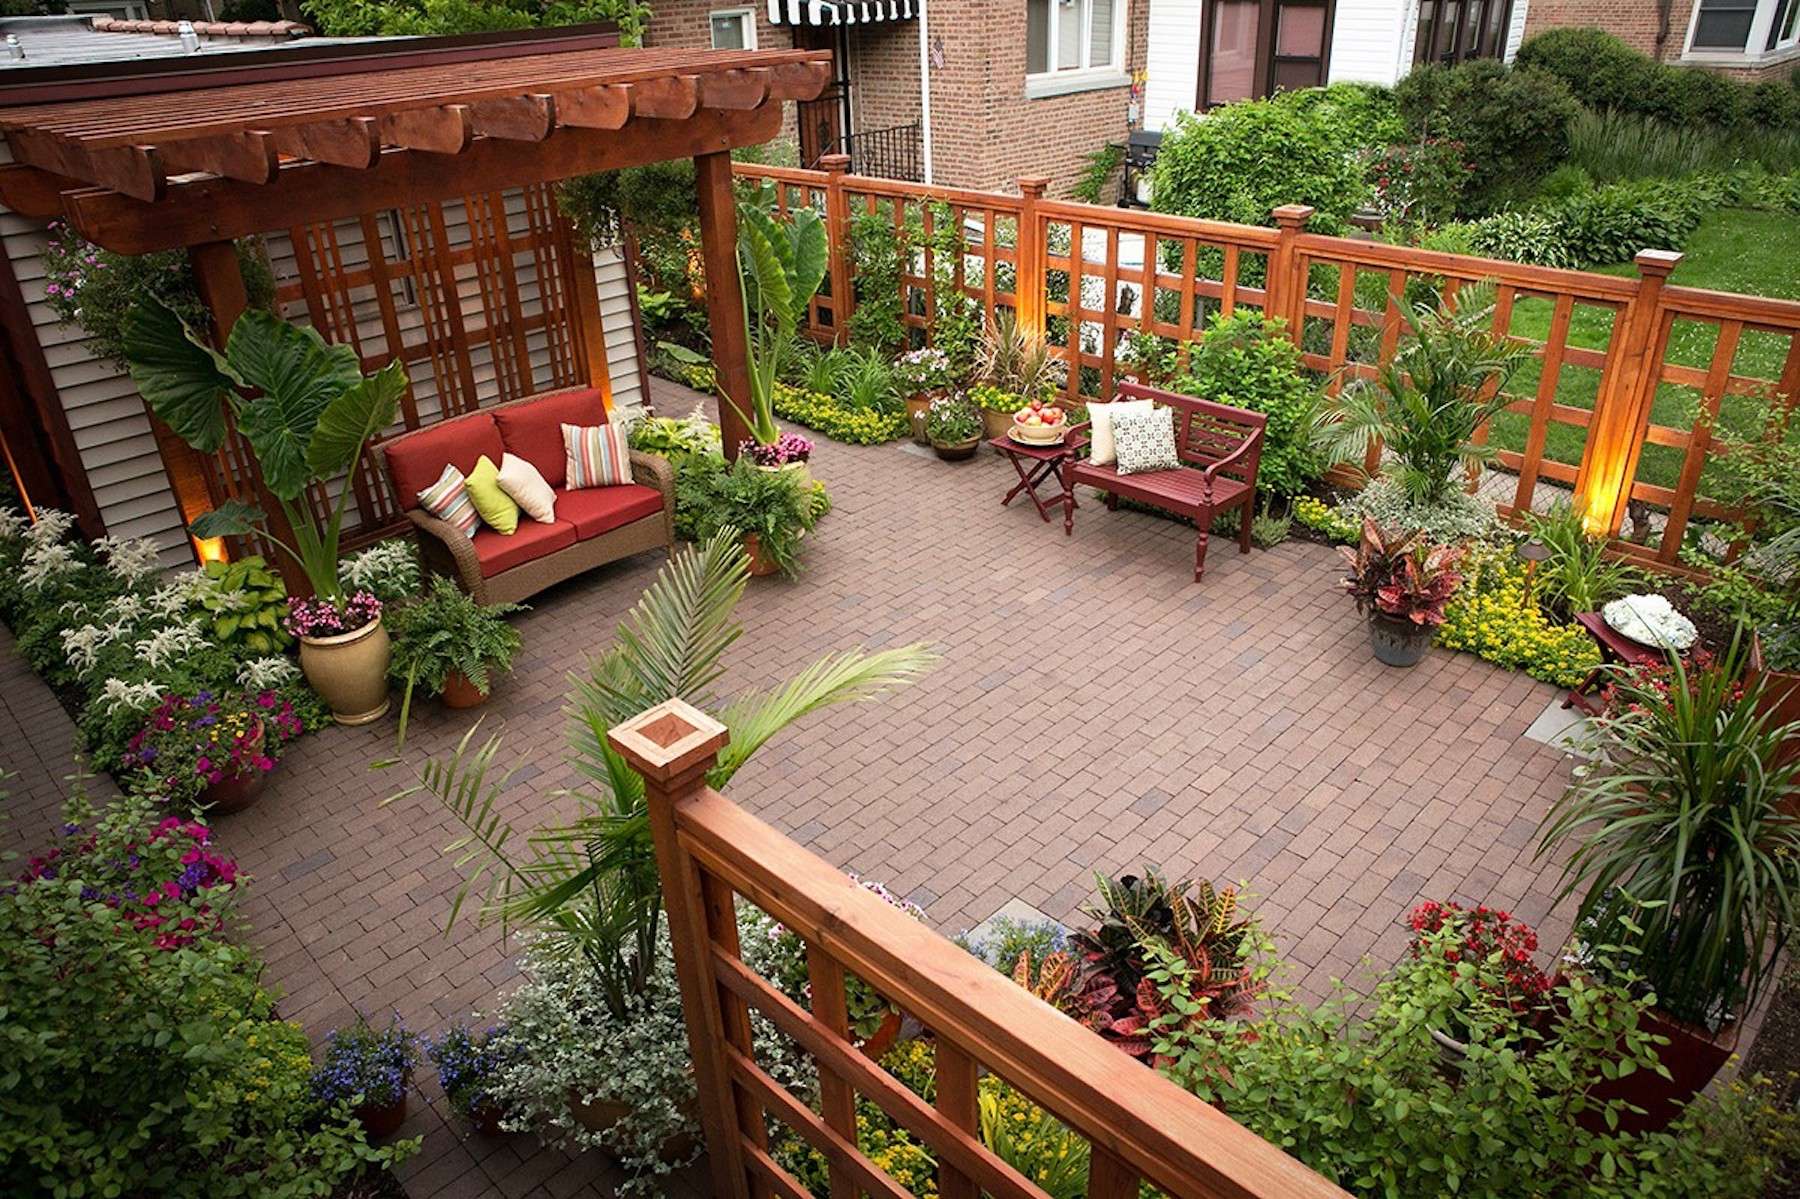 brick paver patio with plantings